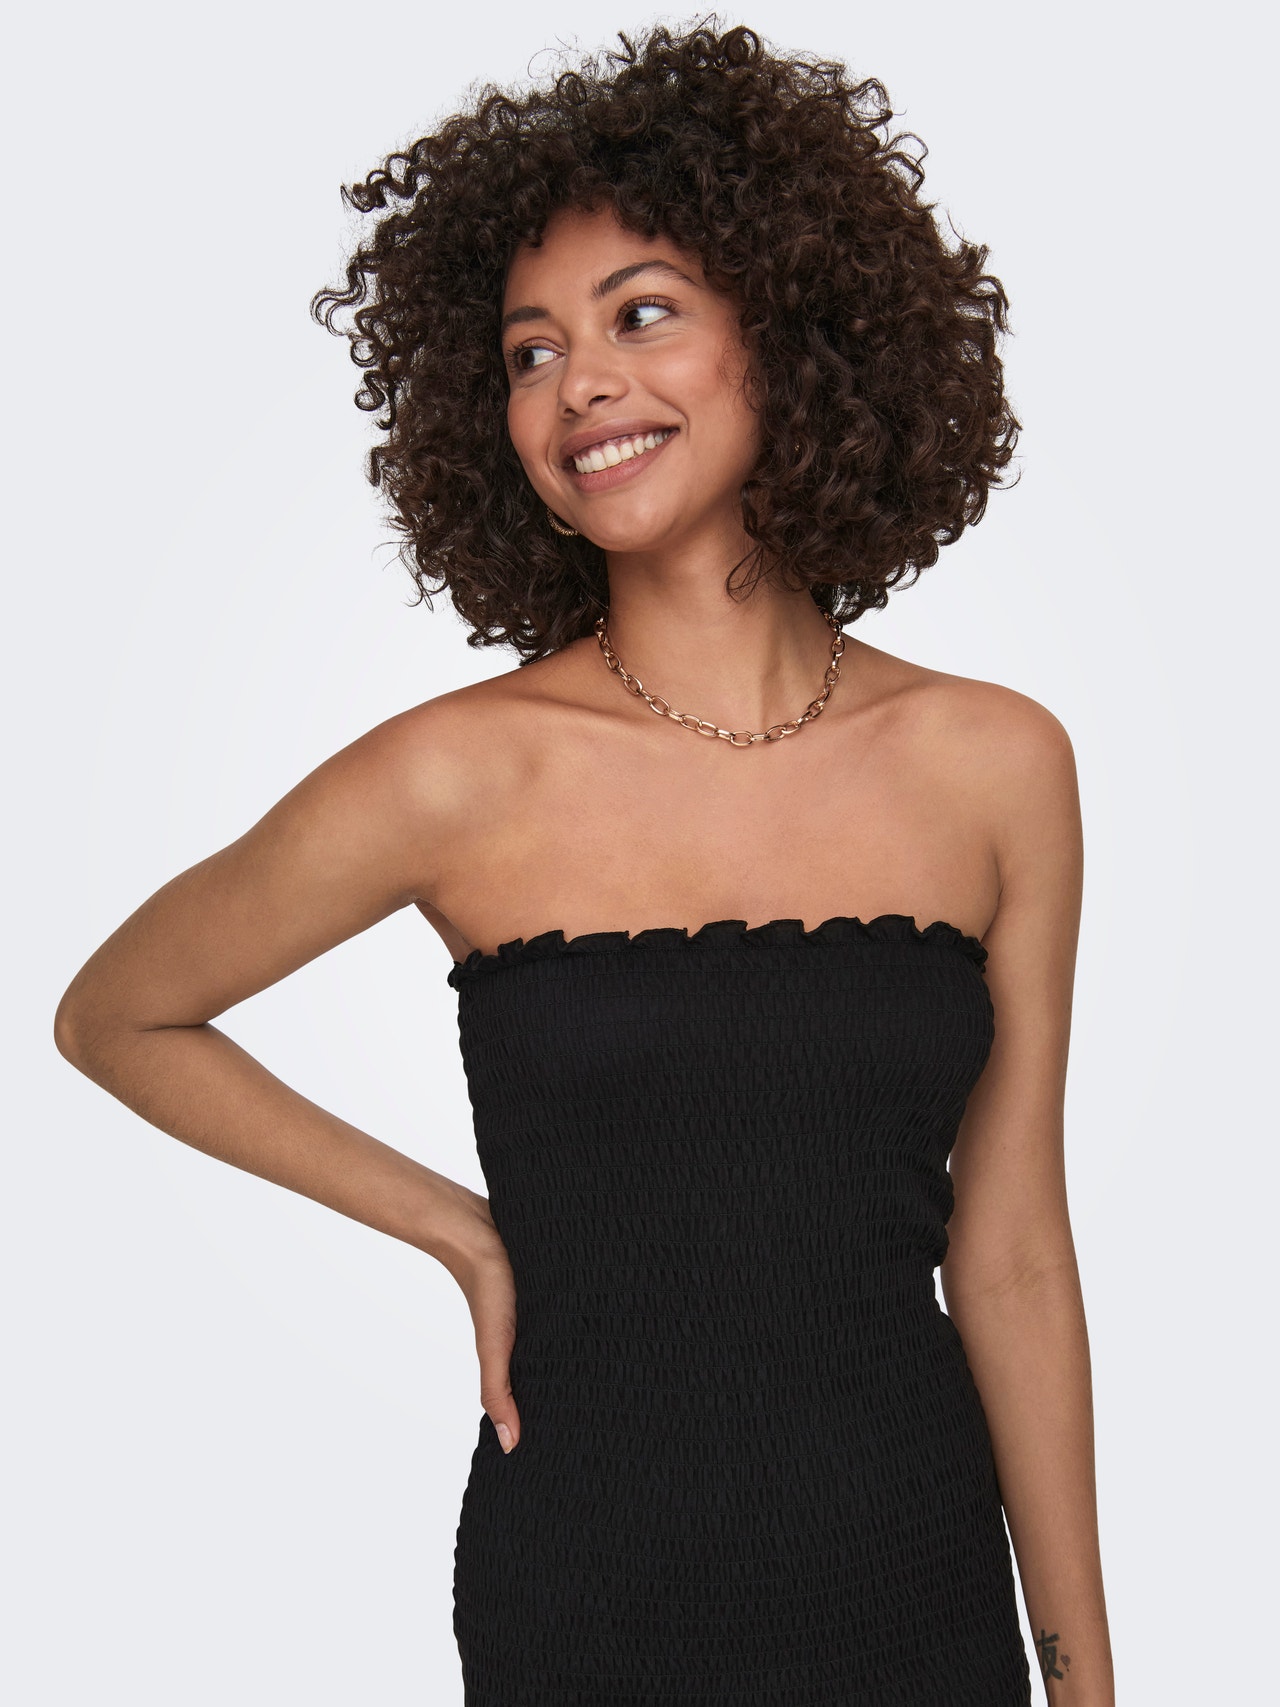 ONLY Slim Fit Off Shoulder Short dress -Black - 15301514